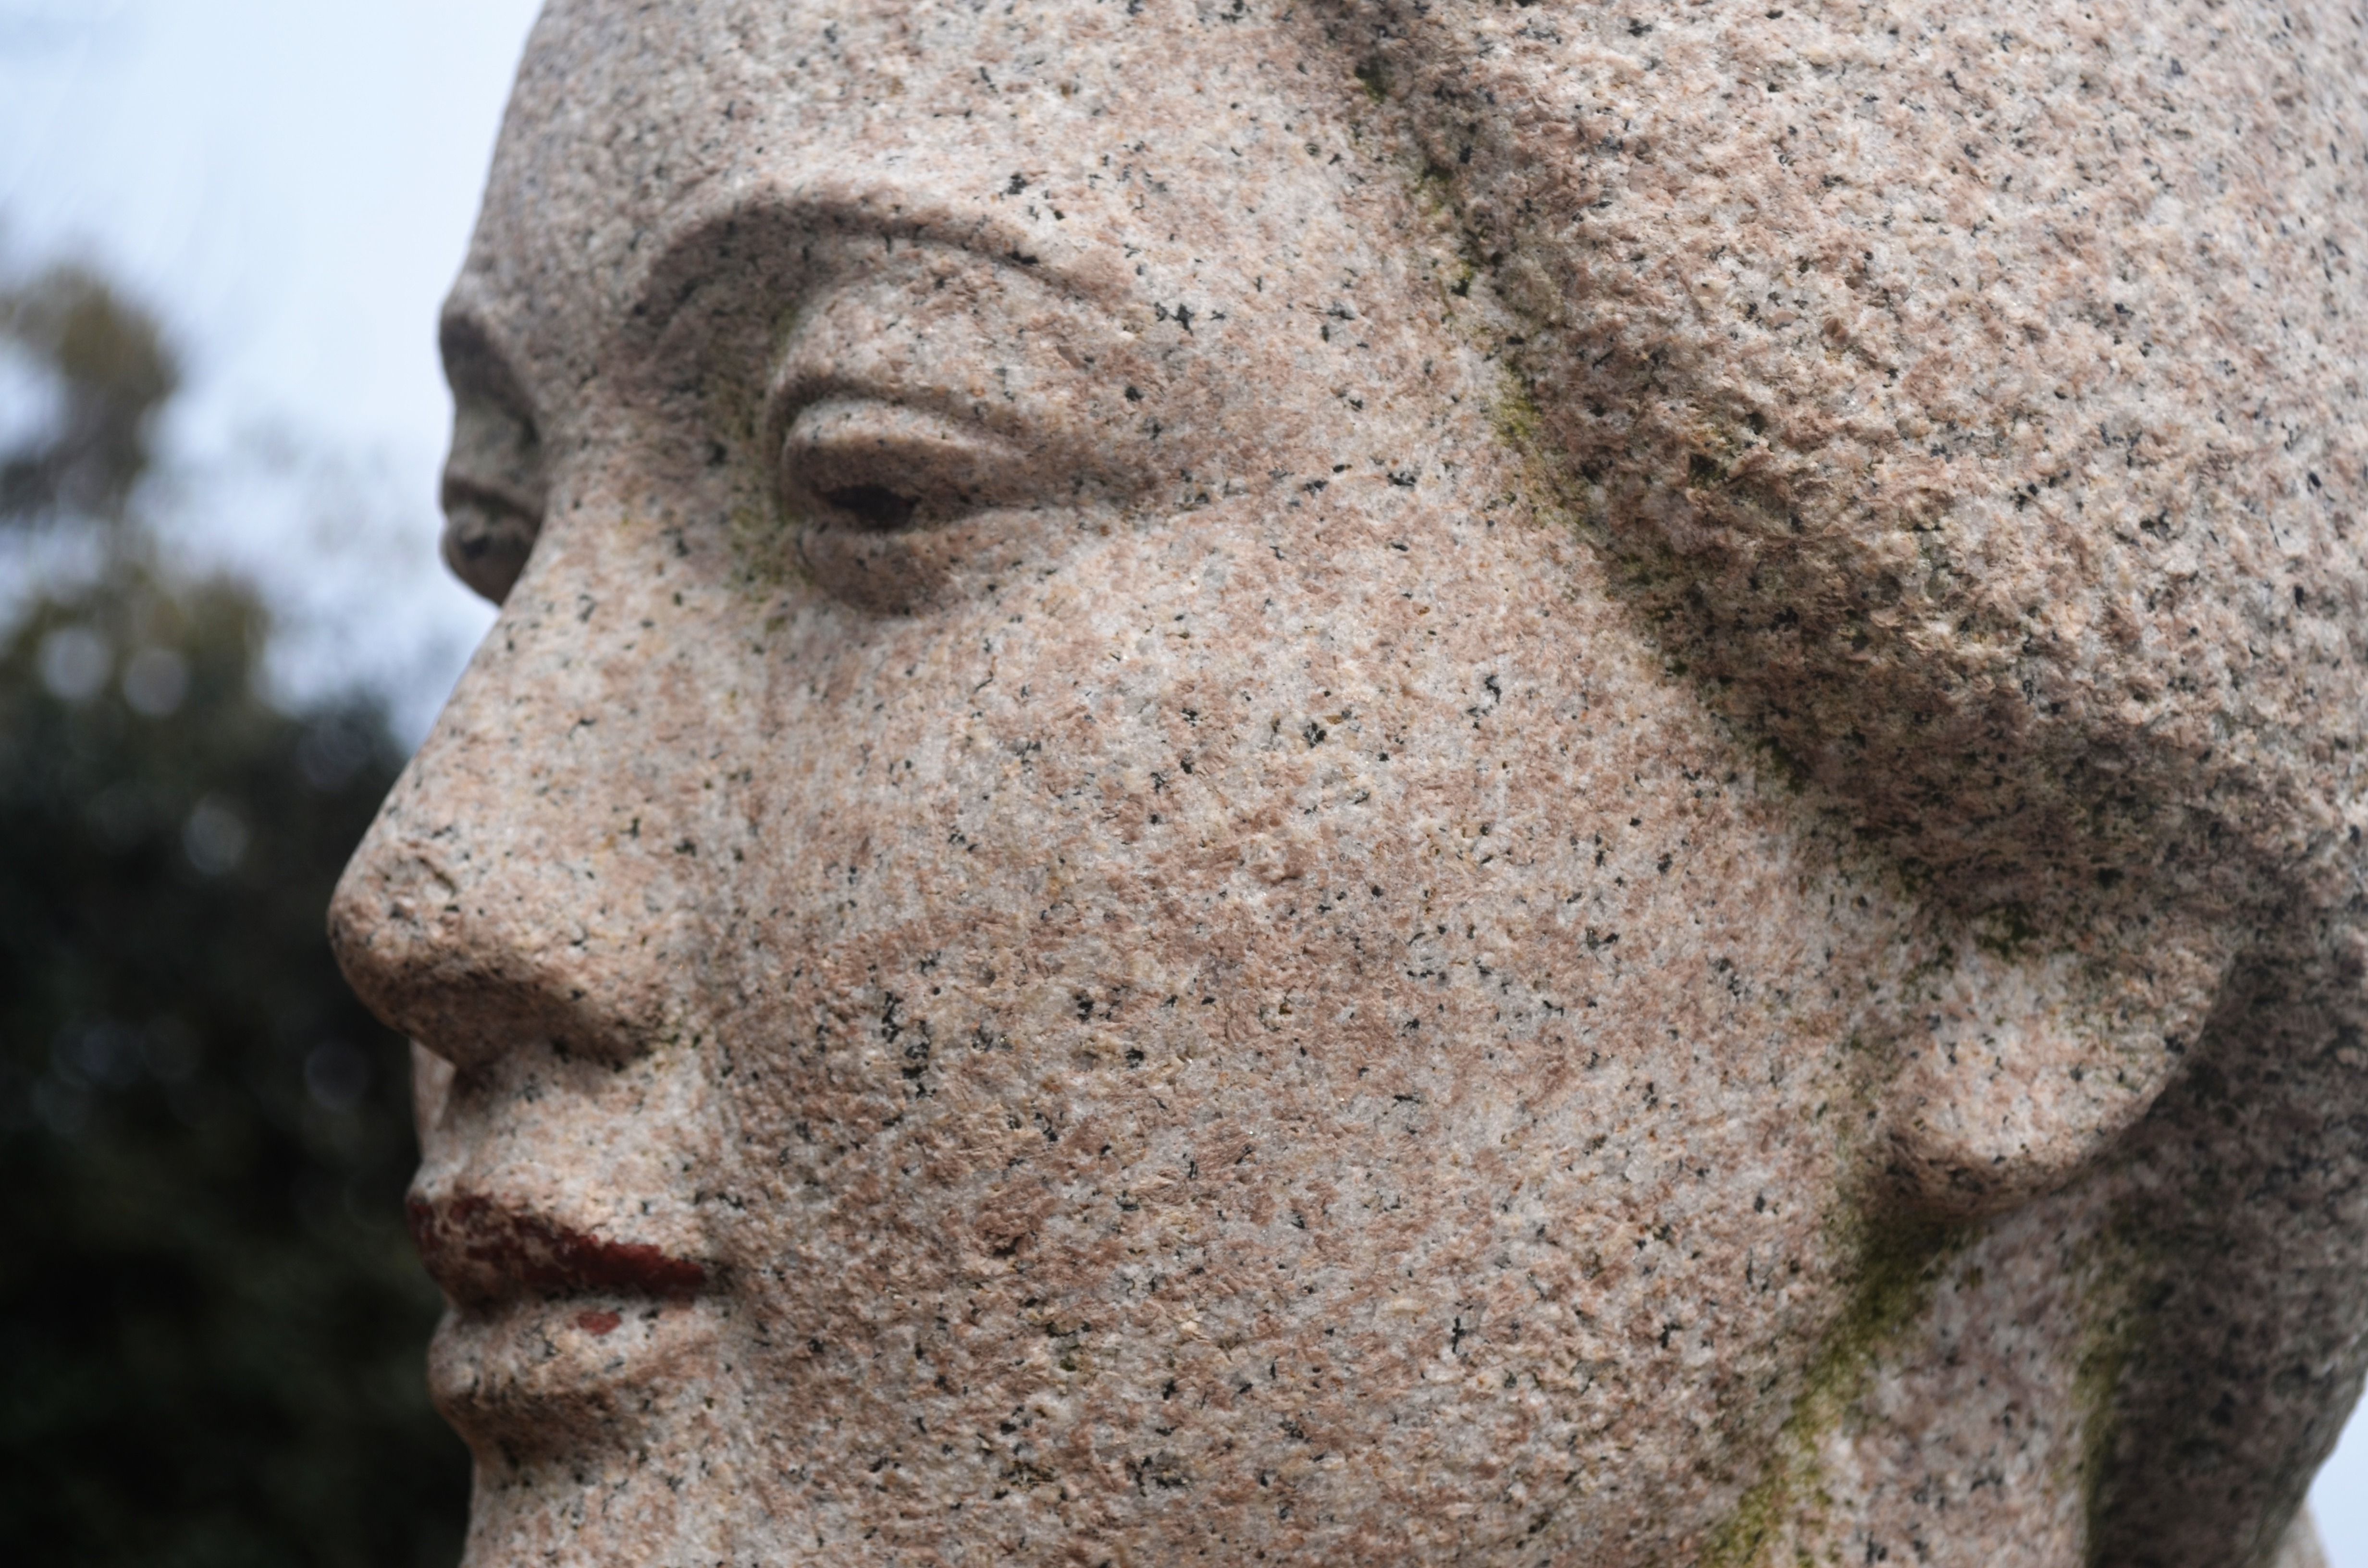 Stone woman. Каменные скульптуры. Скульптура голова женщины. Каменные статуи людей. Статуя Каменное лицо.